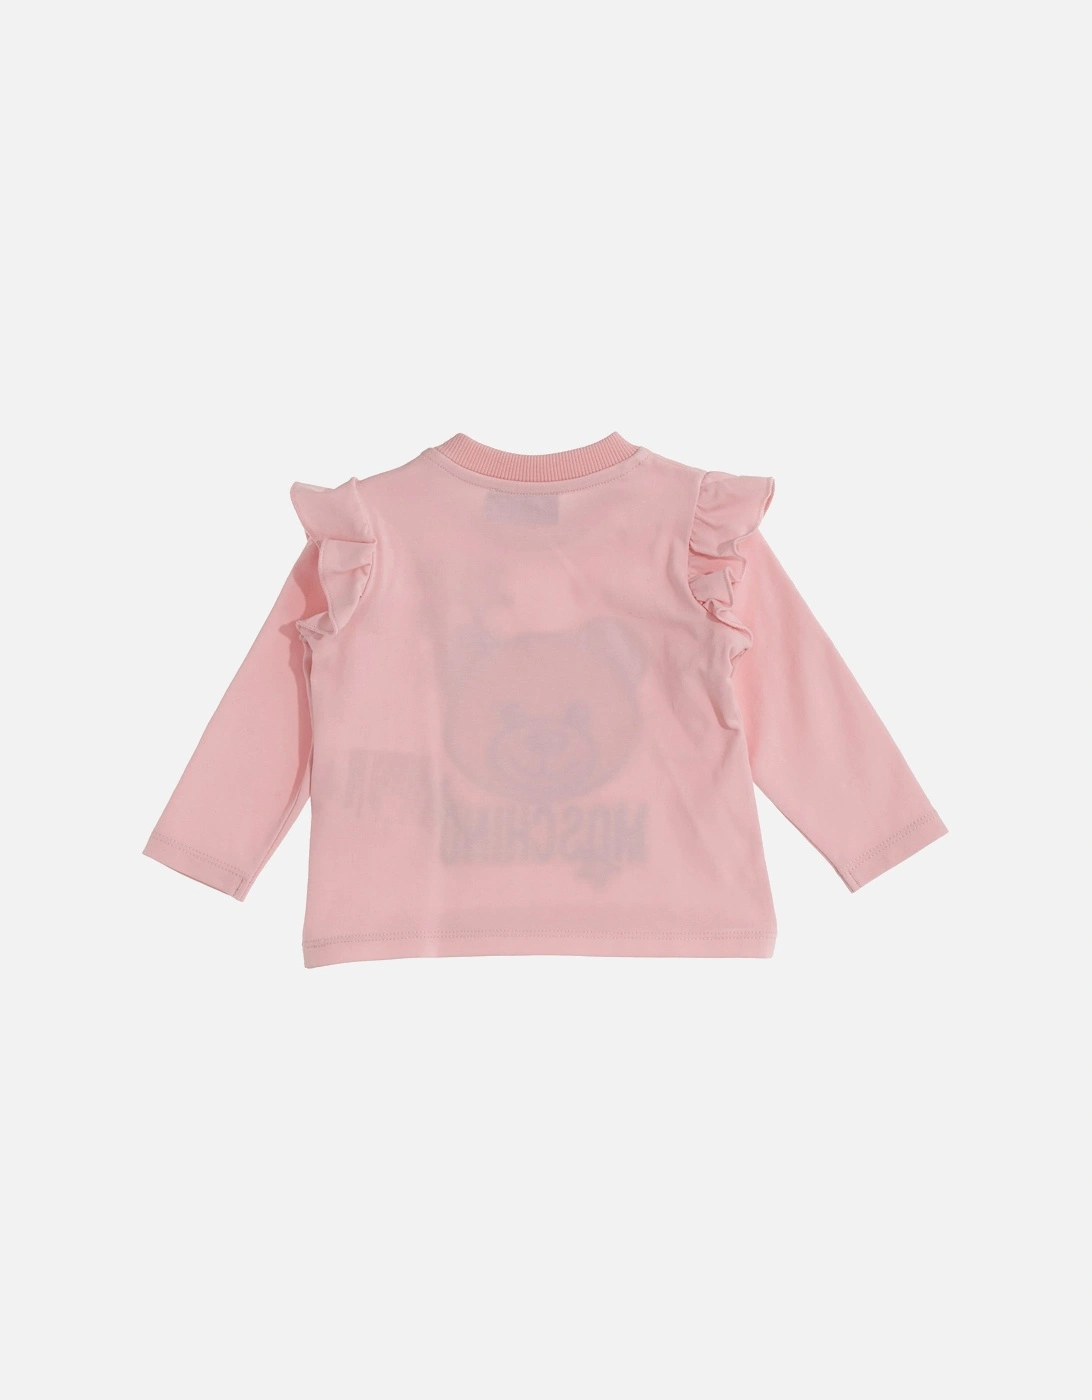 Infants L/S T-shirt (Pink)